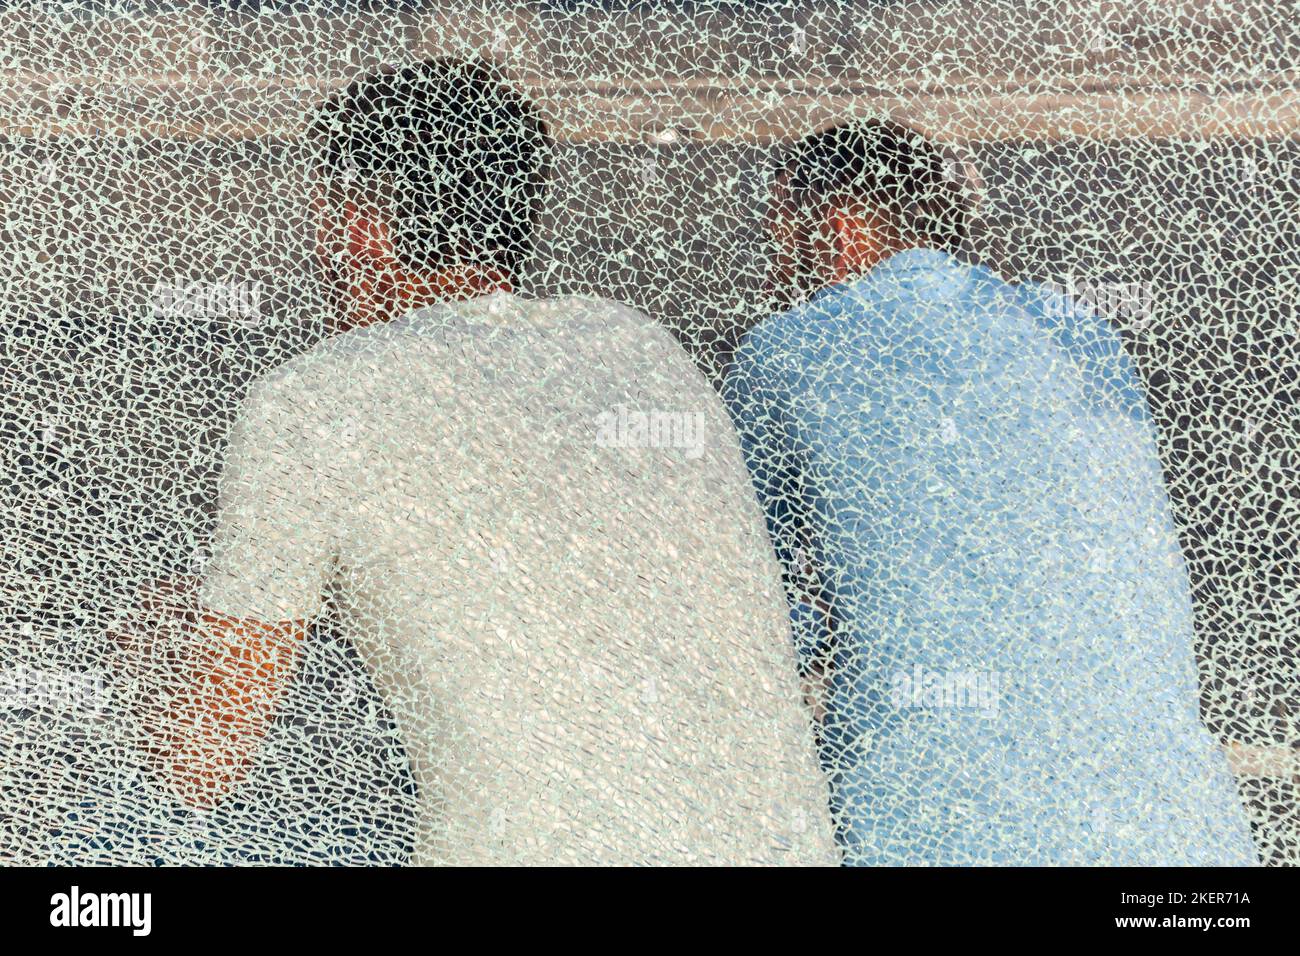 Zwei Personen saßen in einer Bushütte, gesehen durch eine kaputte Glaswand. Brüssel. Stockfoto